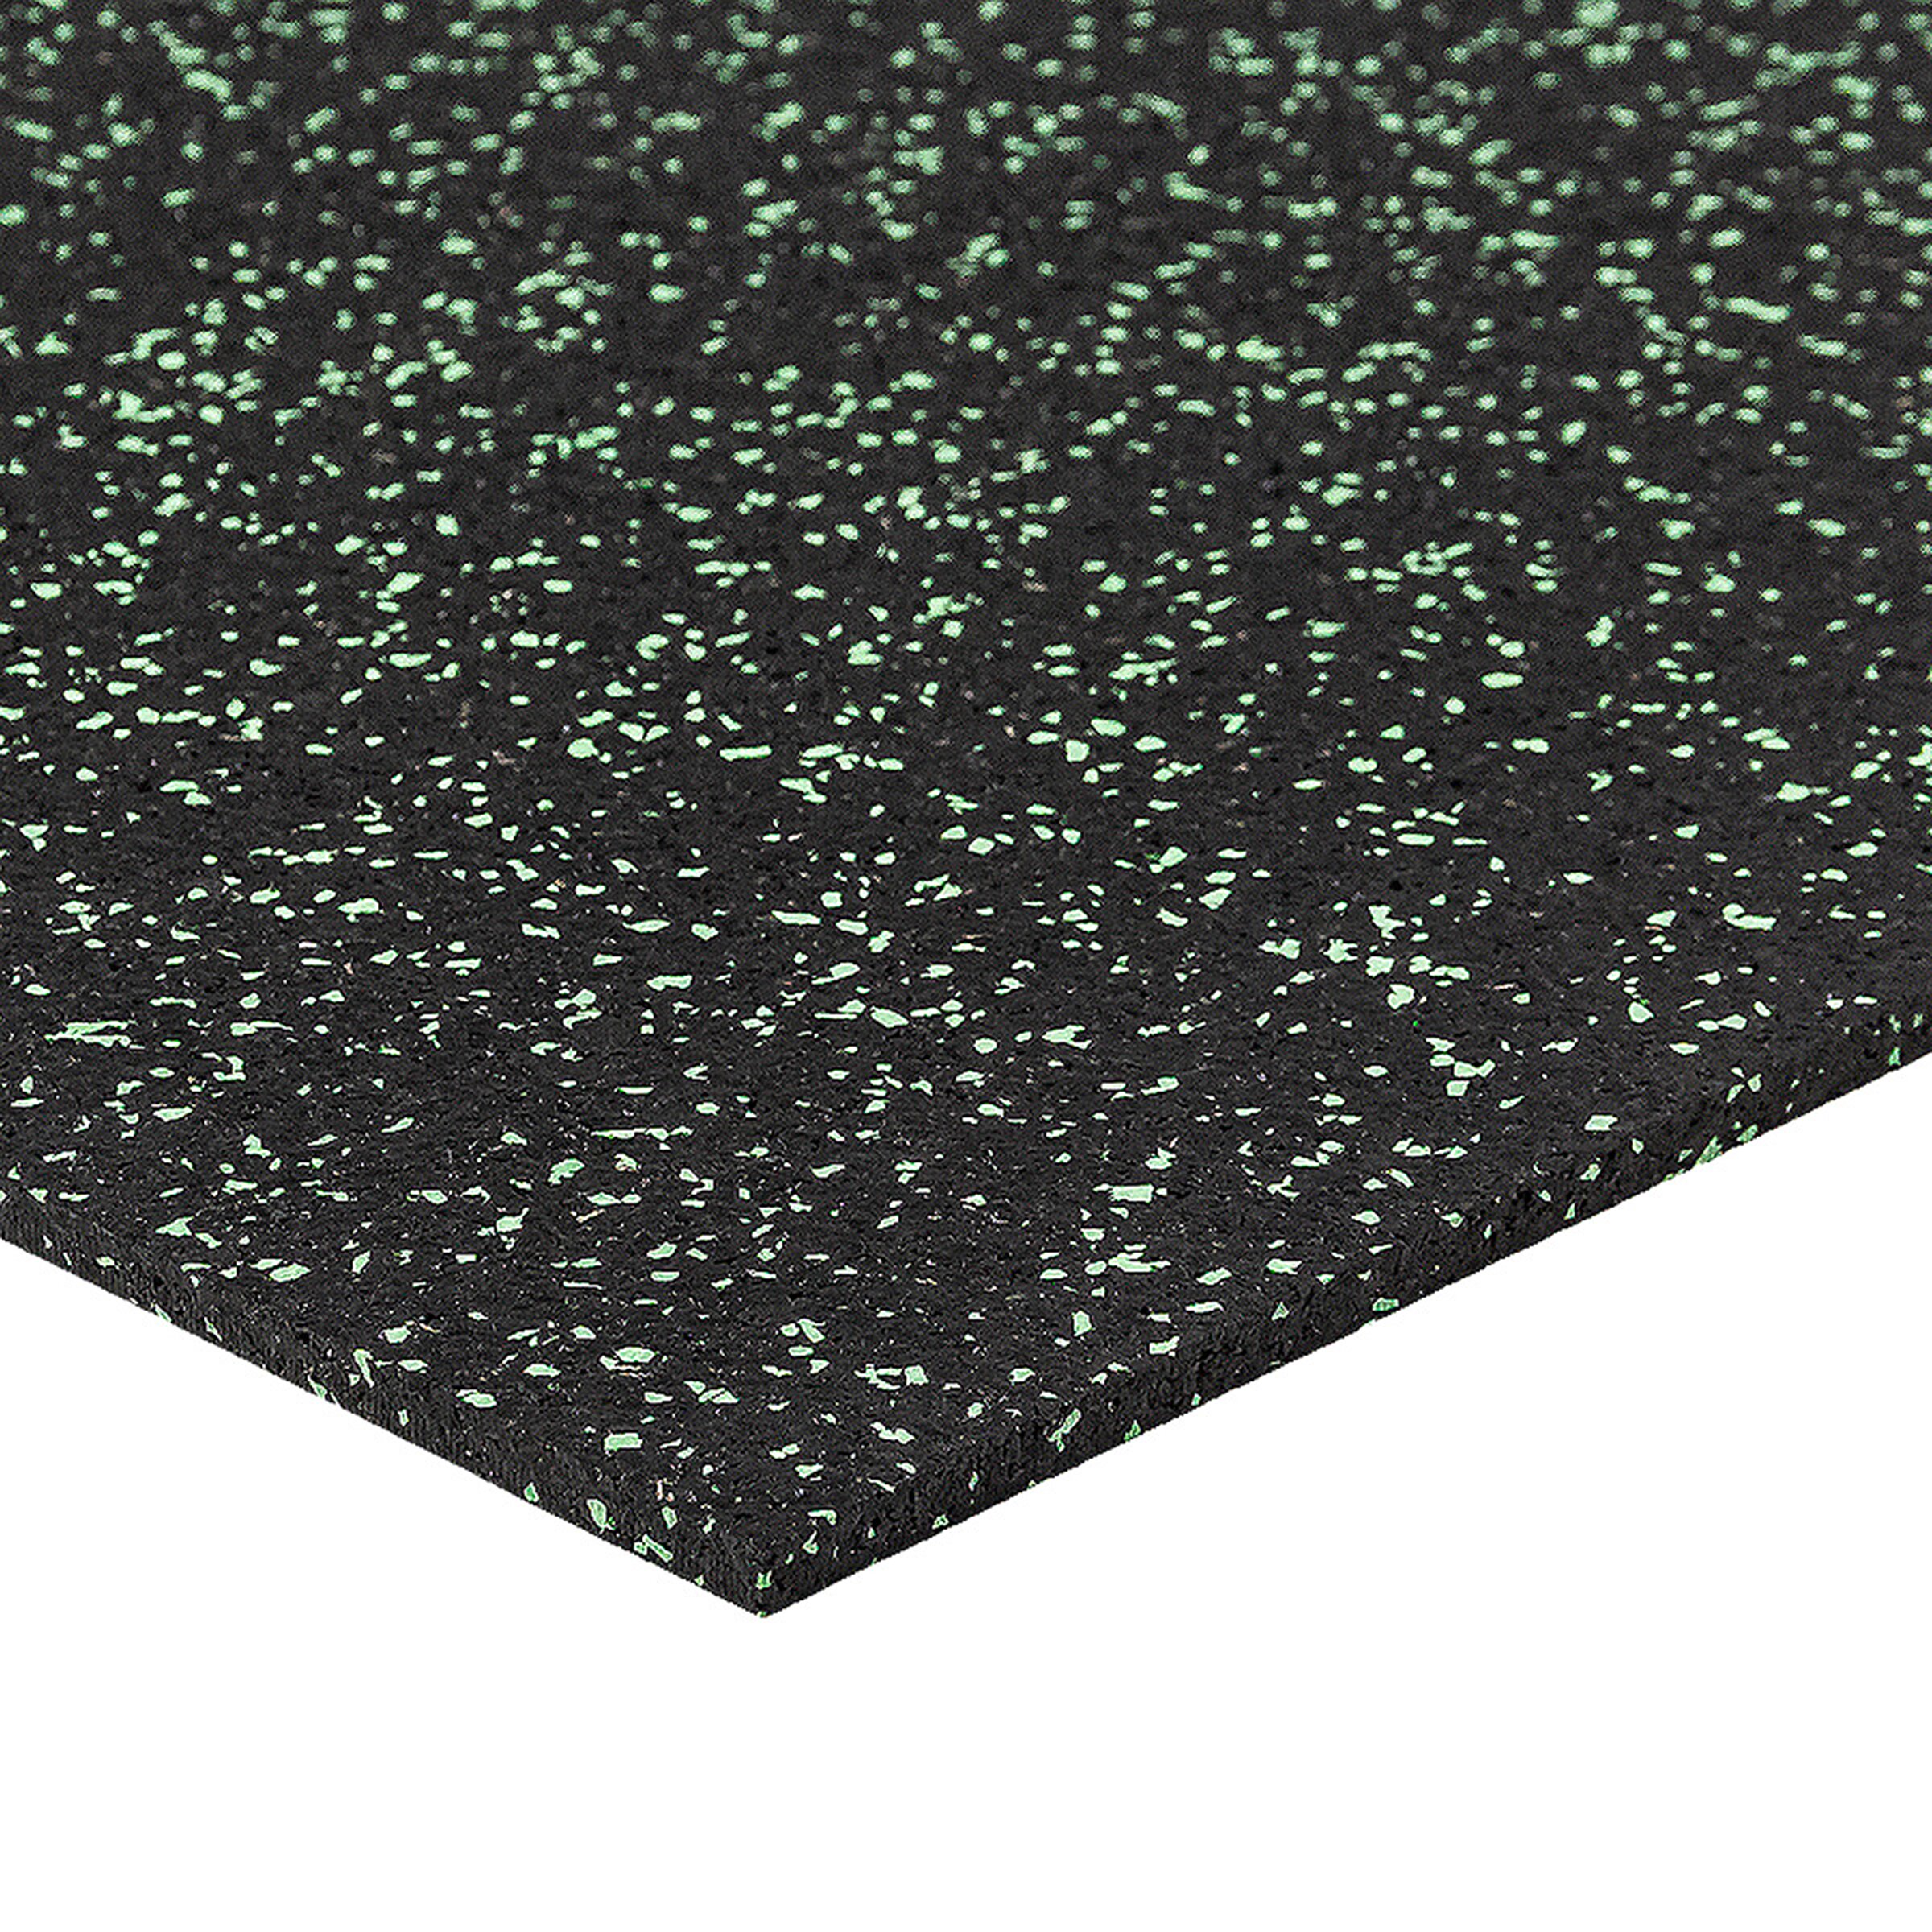 Čierno-zelená gumová modulová puzzle dlažba (okraj) FLOMA FitFlo SF1050 - dĺžka 50 cm, šírka 50 cm, výška 0,8 cm